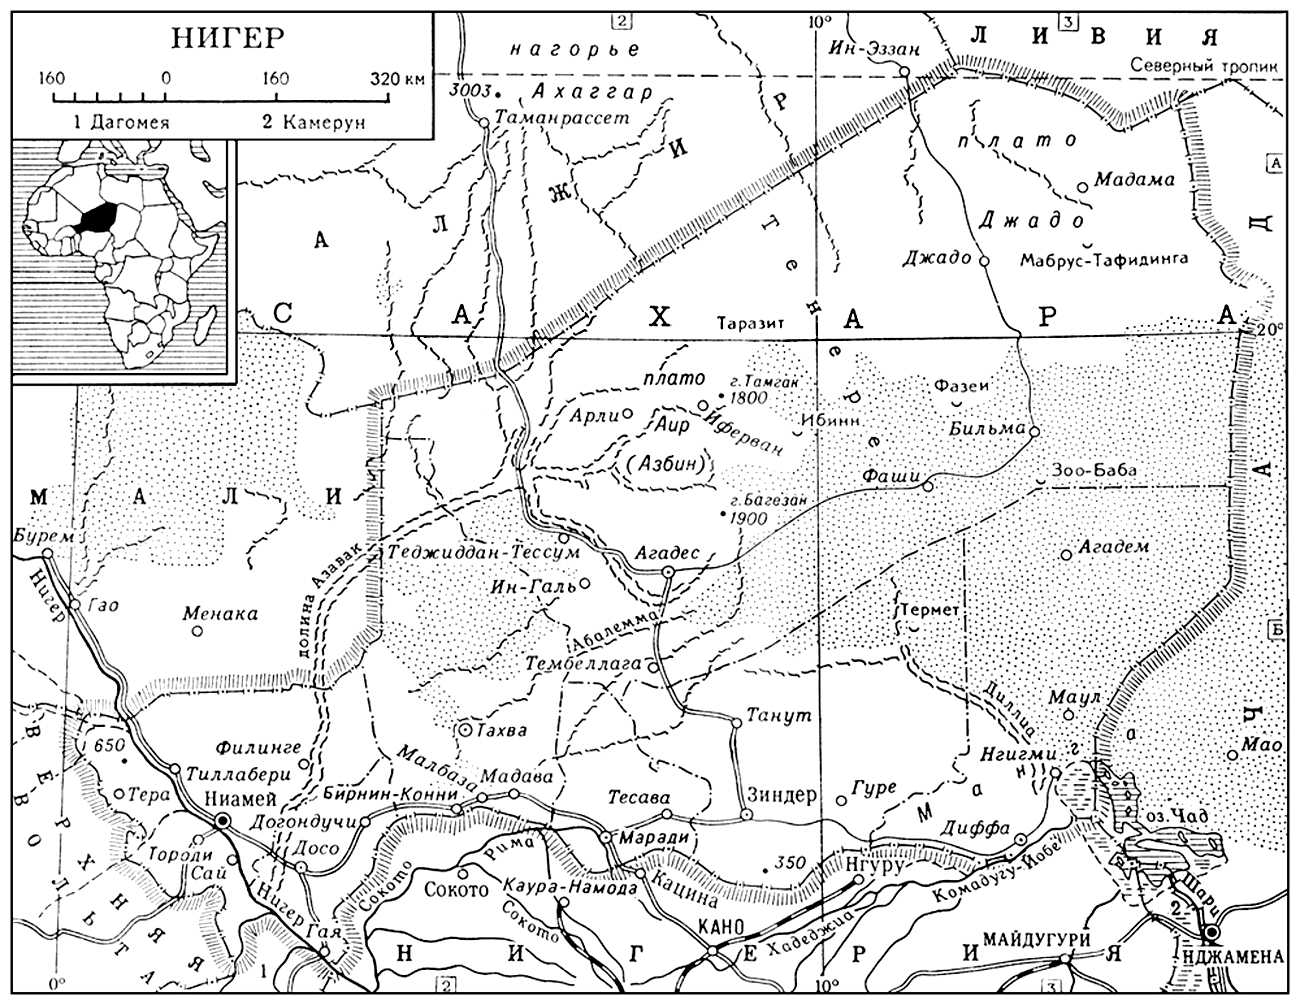 Нигер (карта)